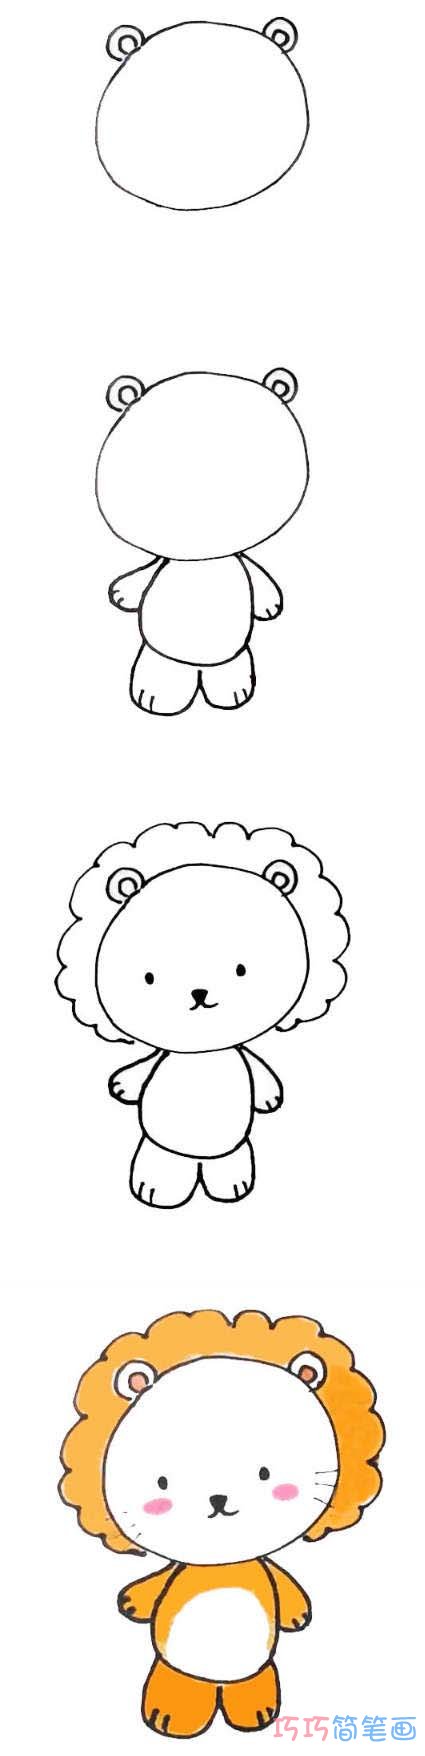 如何画卡通小狮子简单可爱 涂色狮子的画法步骤图